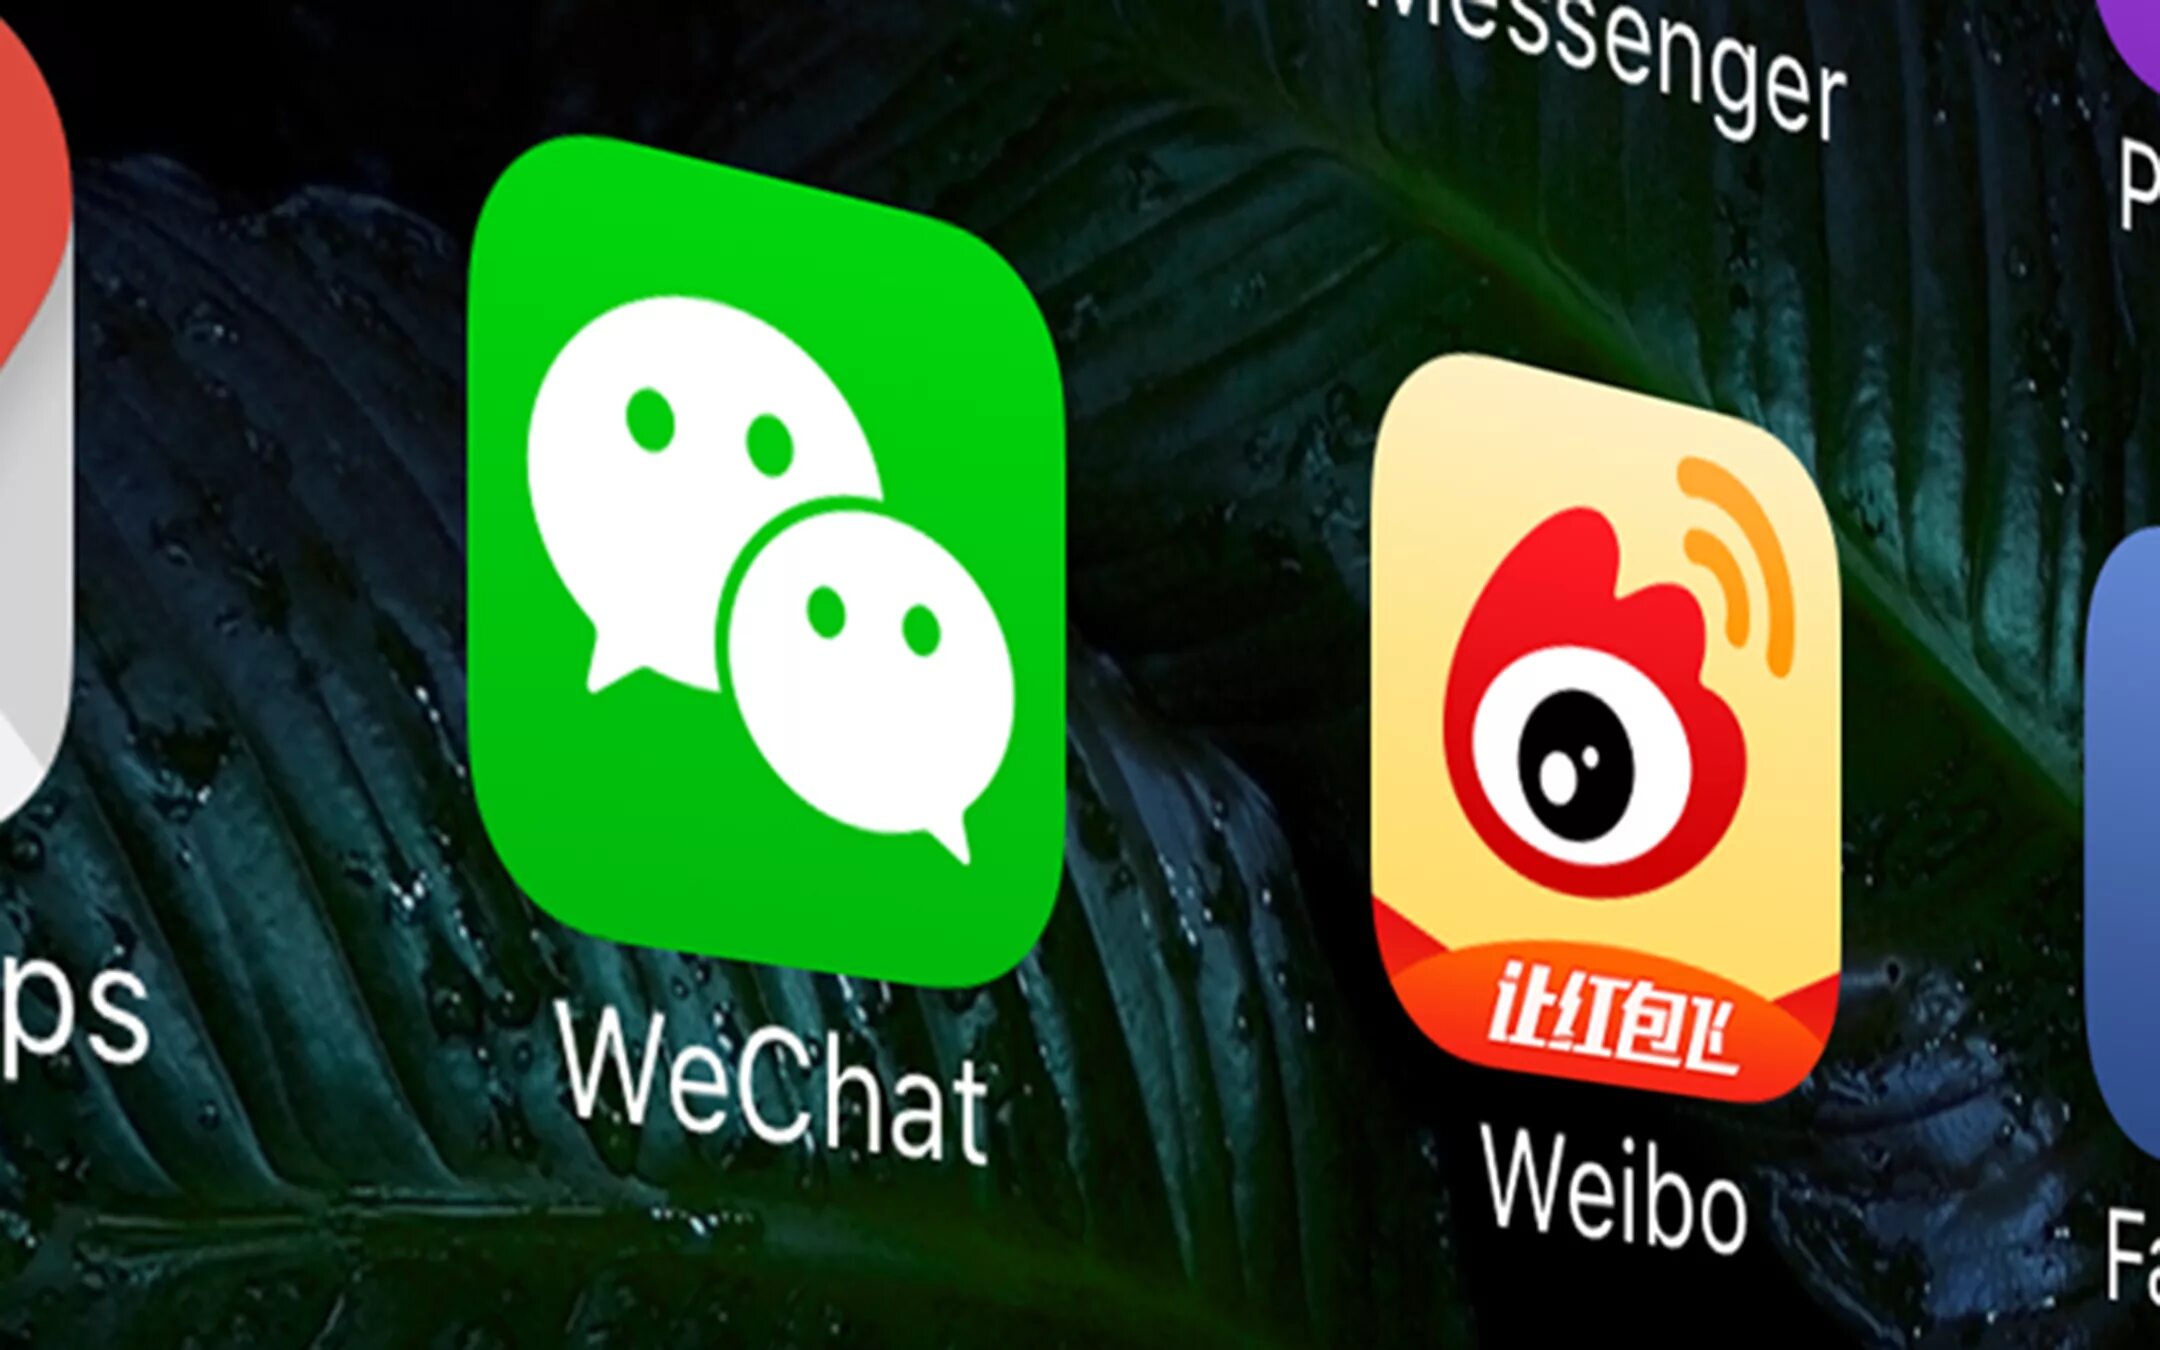 Китайские соц сети. Weibo WECHAT. Китайская социальная сеть Weibo. Социальные сети WECHAT. Социальные сети Китая.